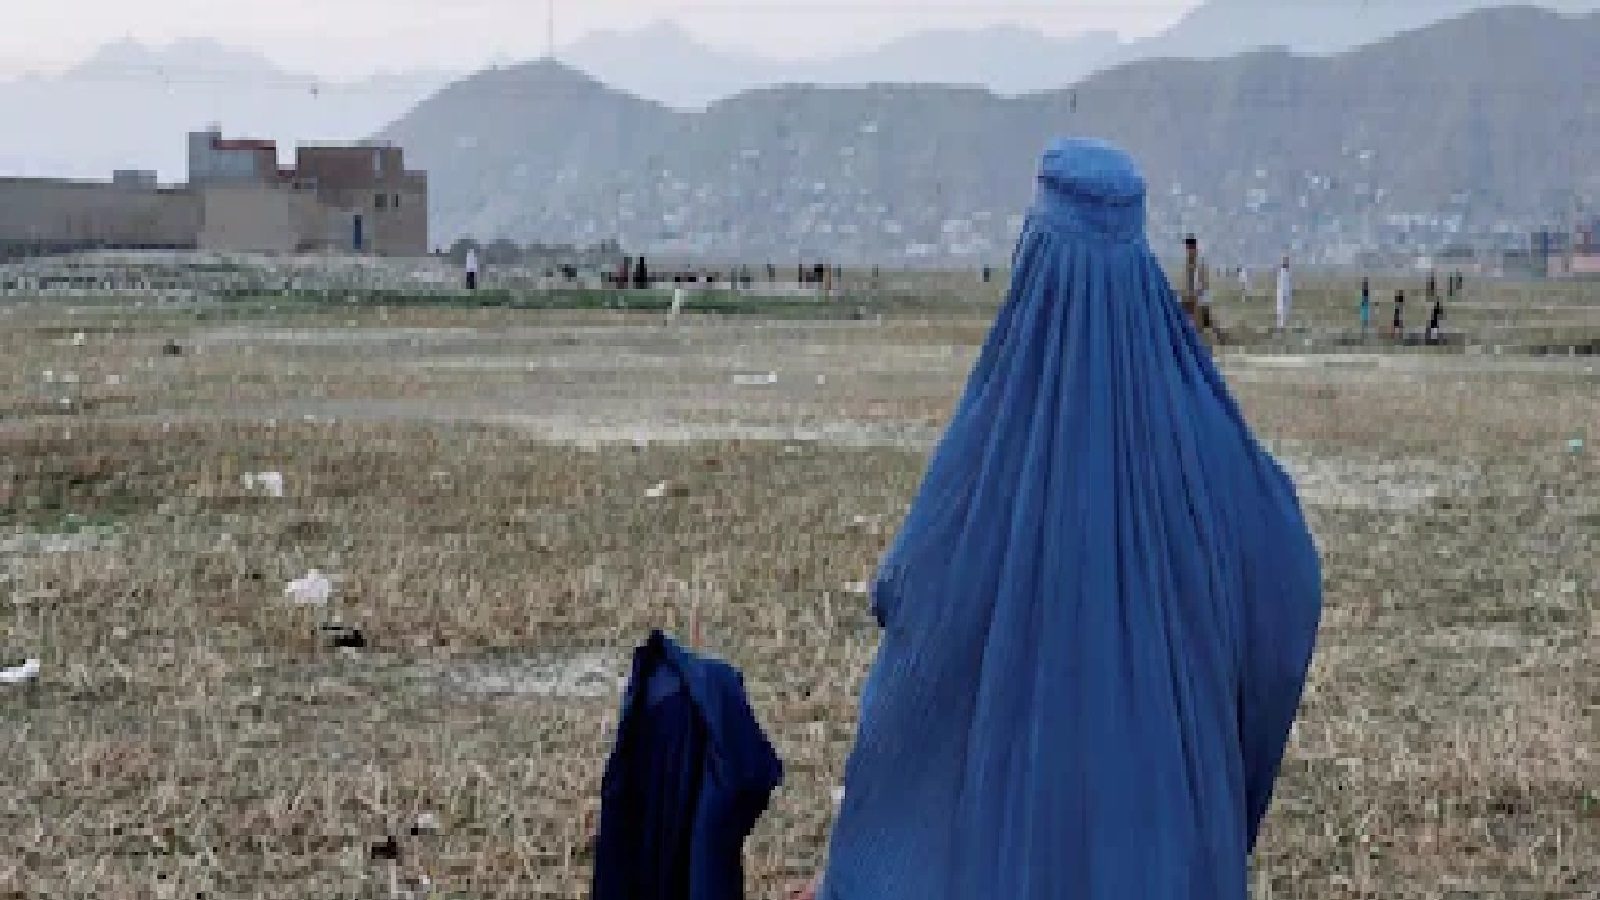 तालिबान राज में भुखमरी की कगार पर लोग, पेट भरने के लिए मां ने बच्ची को बेचा